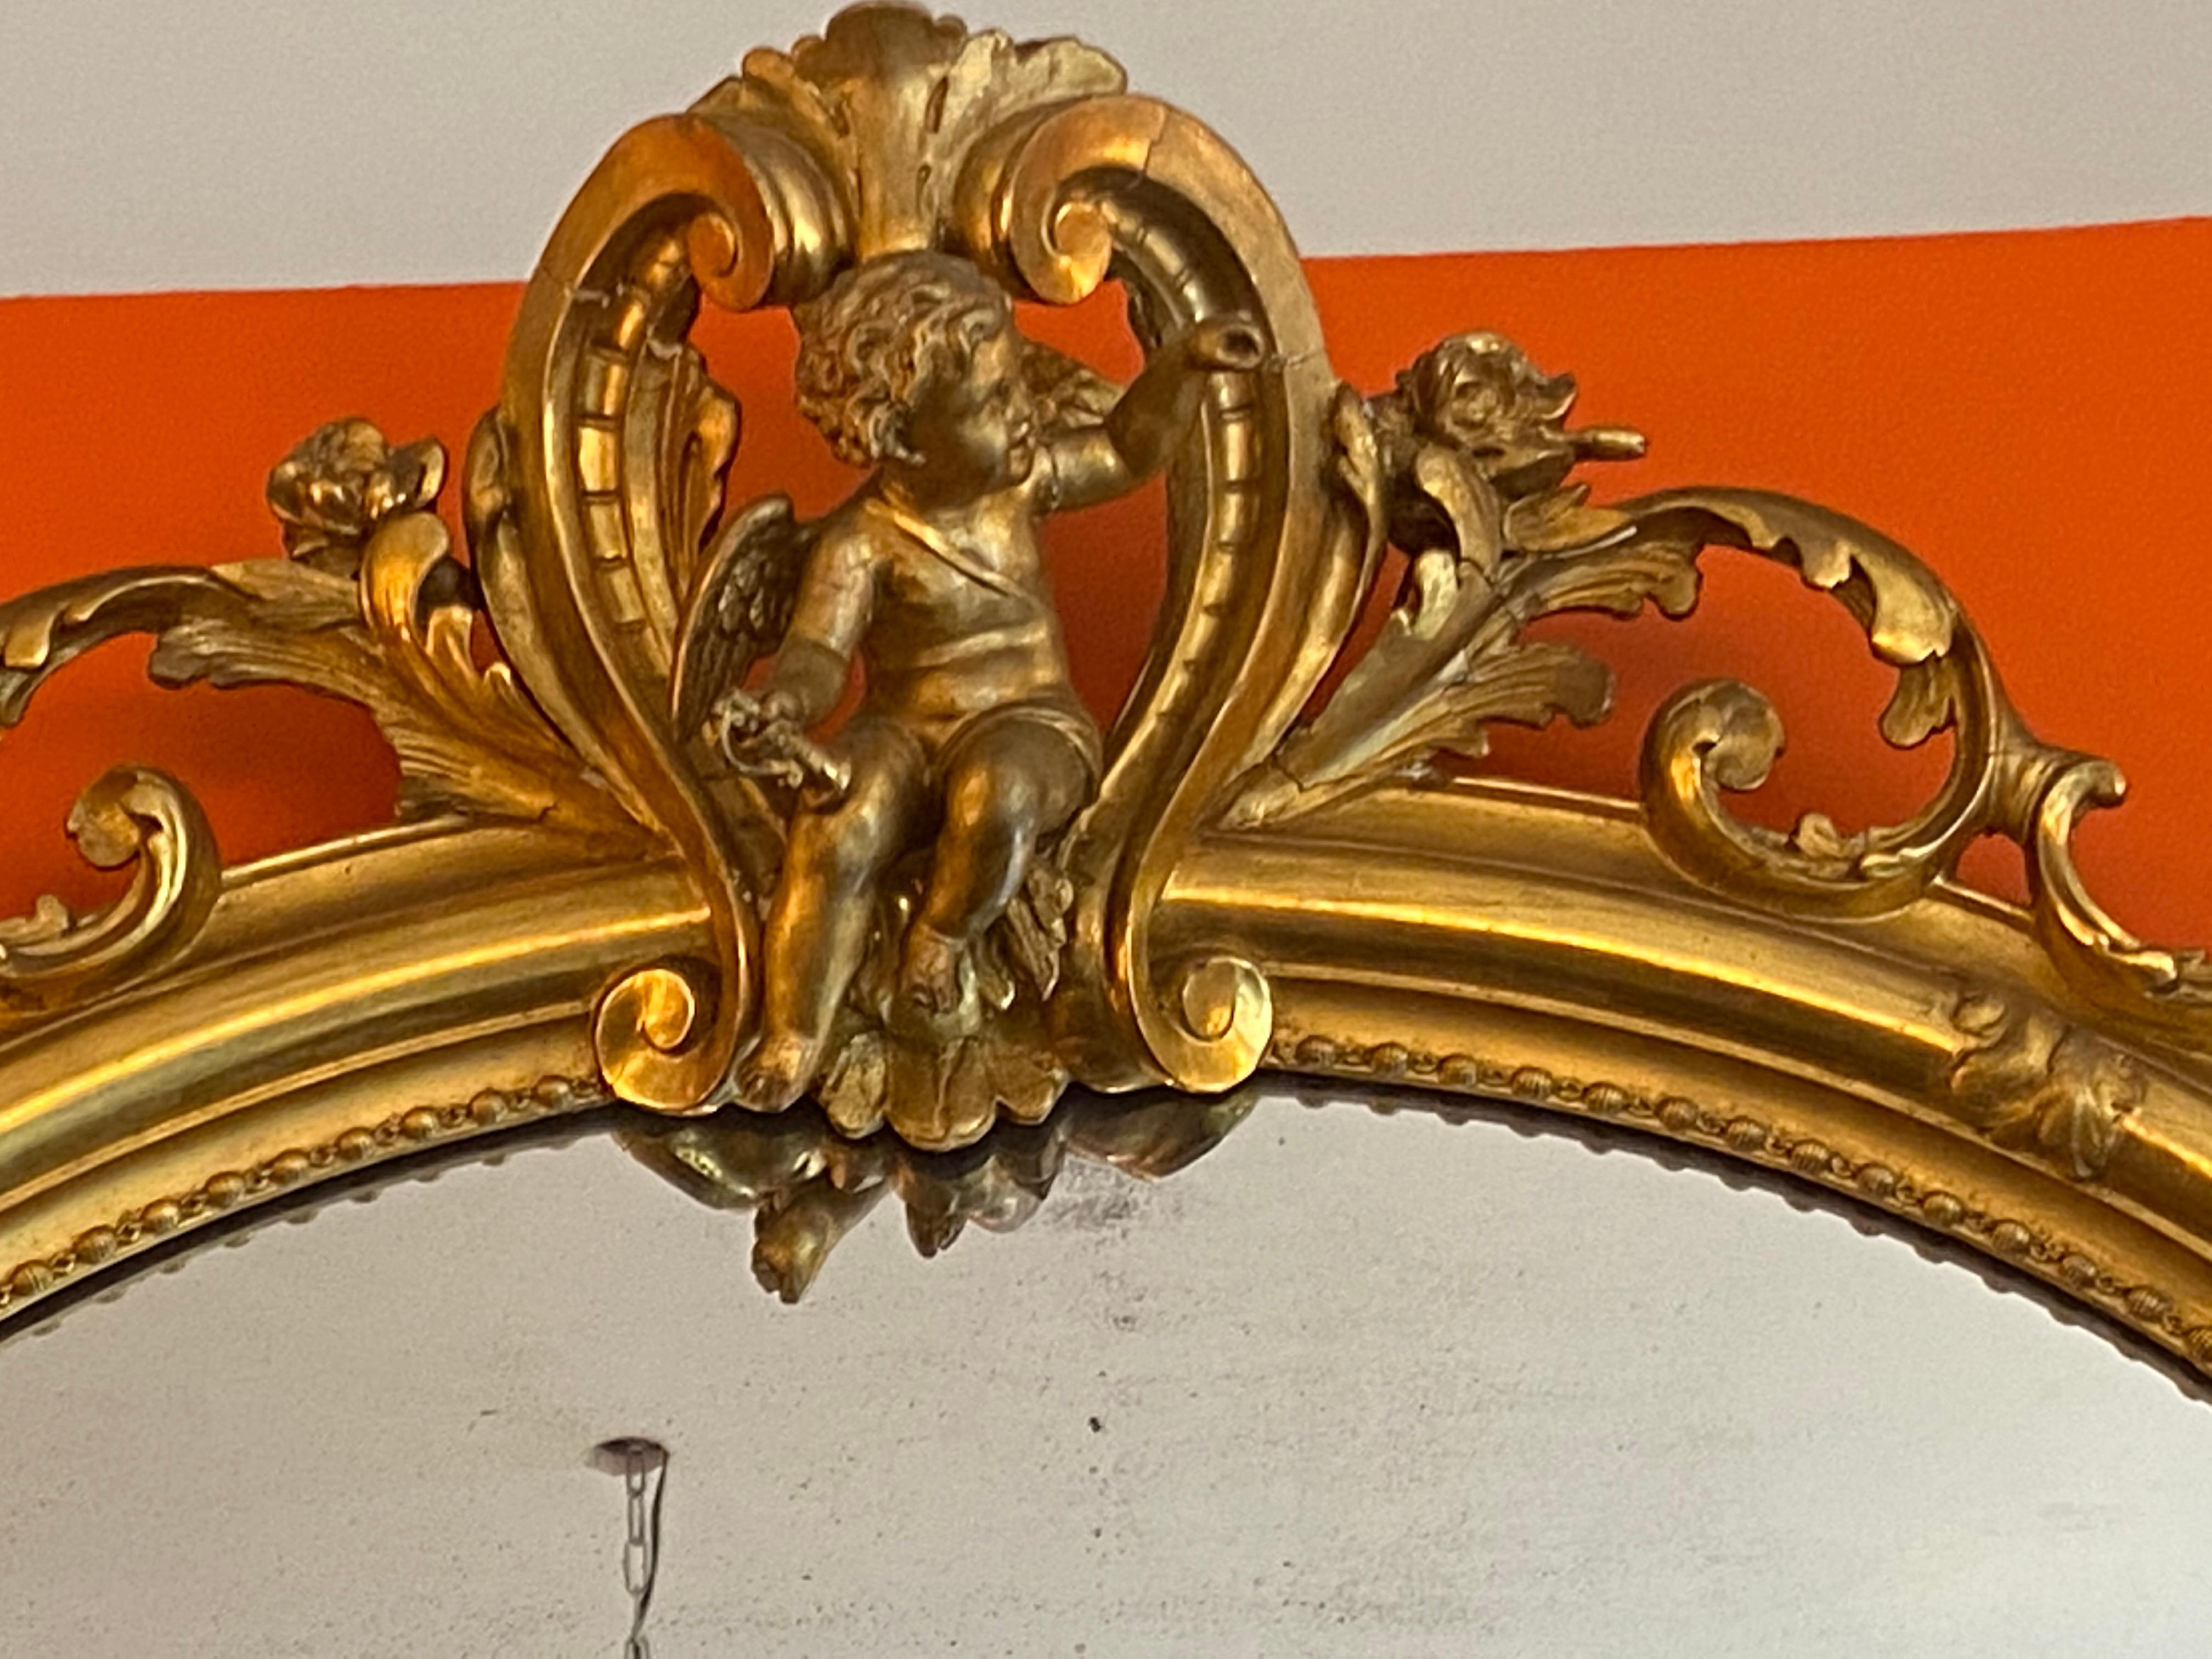 Schöne geschnitzte Gold Gold Französisch Spiegel.